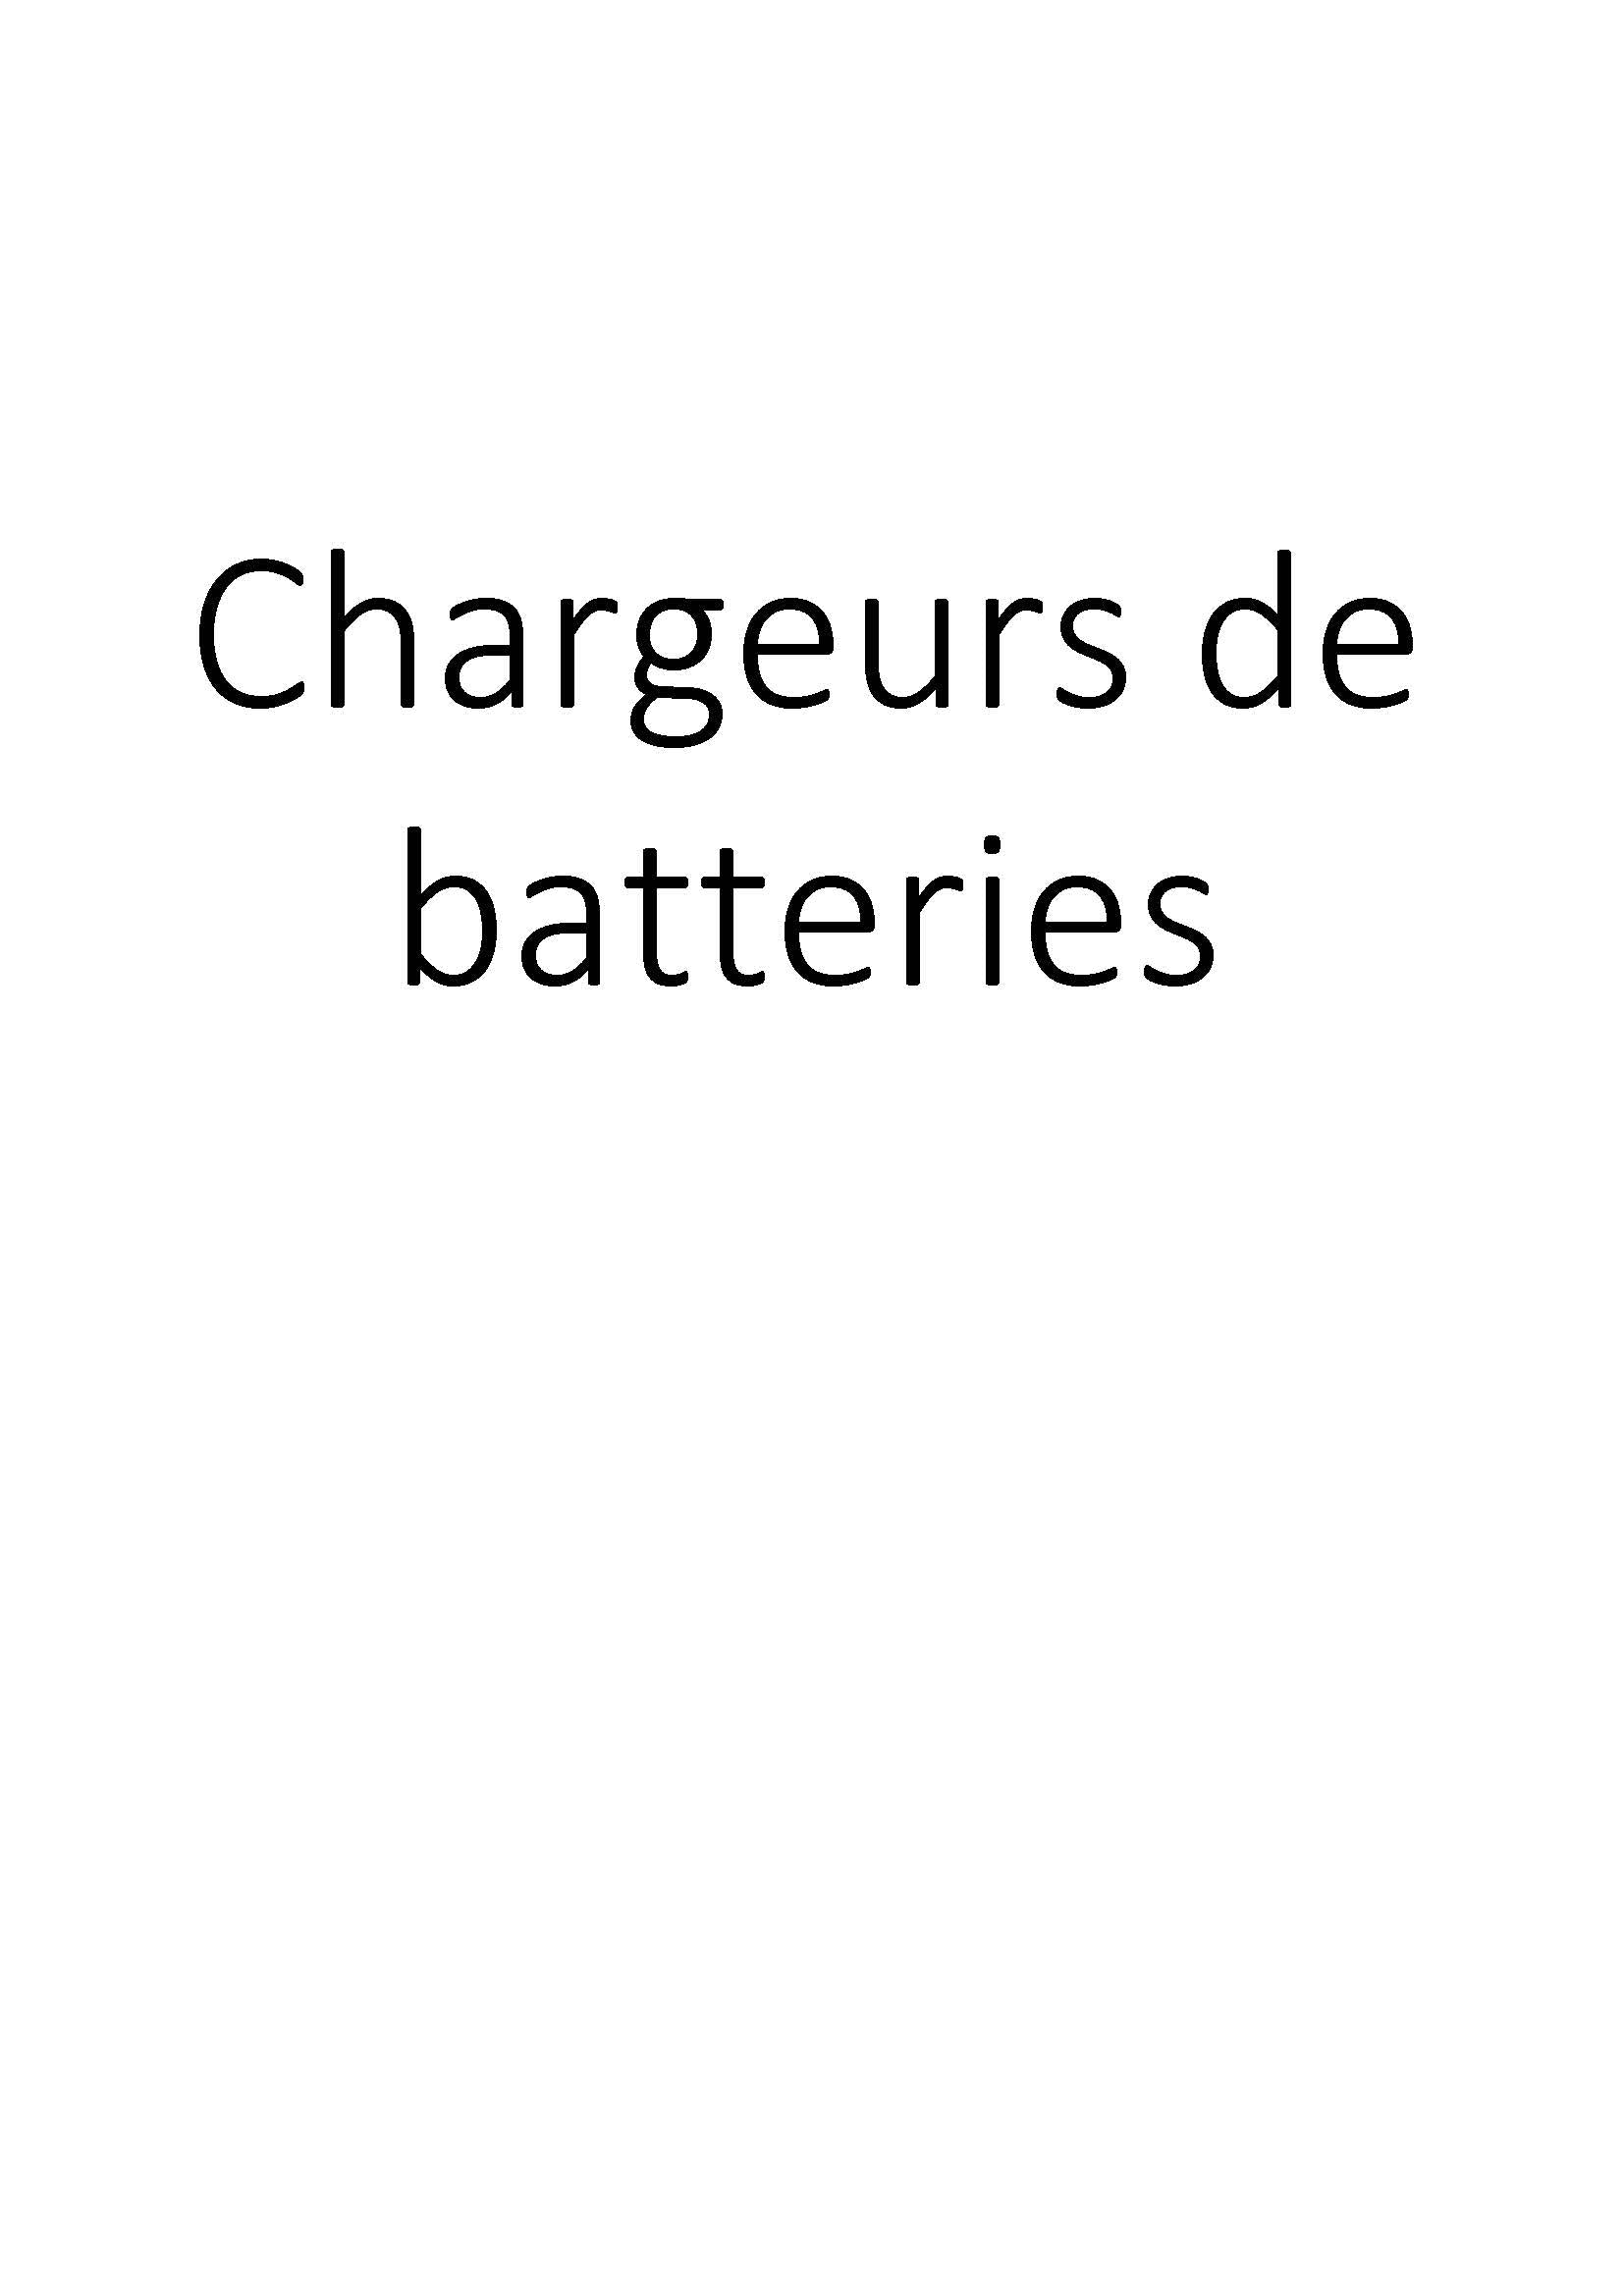 Chargeurs de batteries clicktofournisseur.com